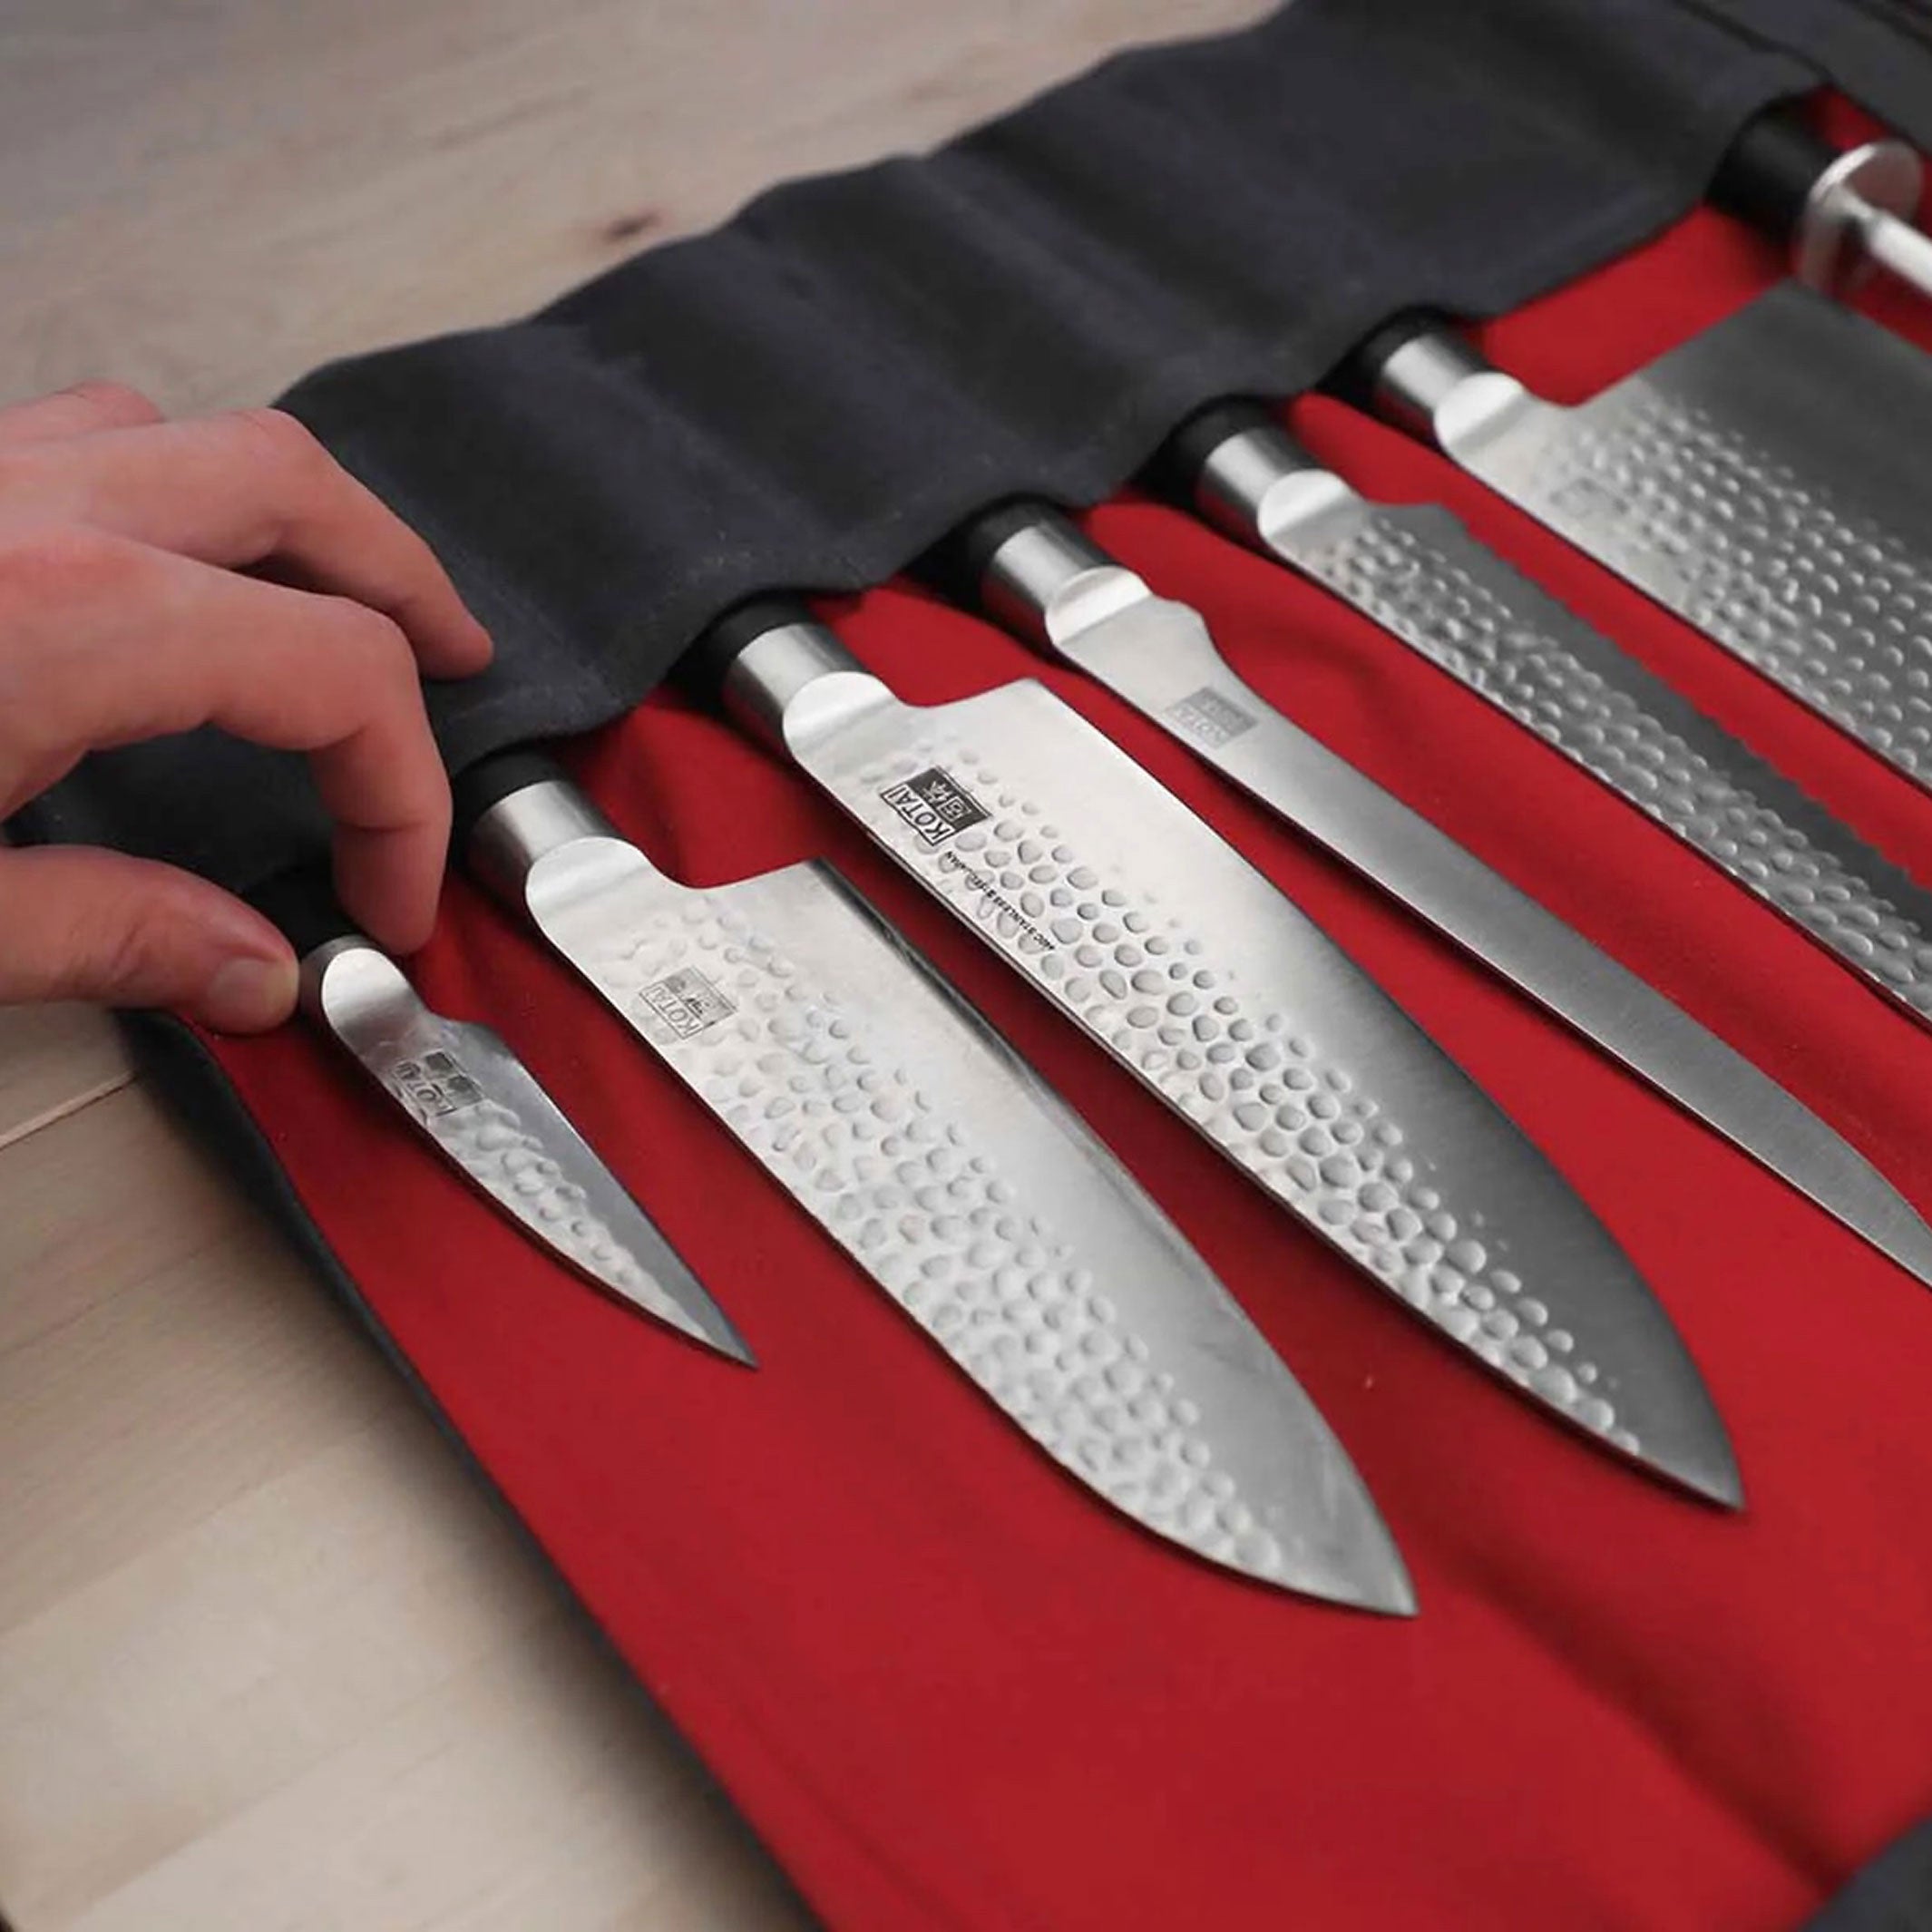 NOMAD KNIFE SET in BAG | Profi Reise-MESSER-SET | 6 Messer, Wetzstahl und Tasche | Kotai